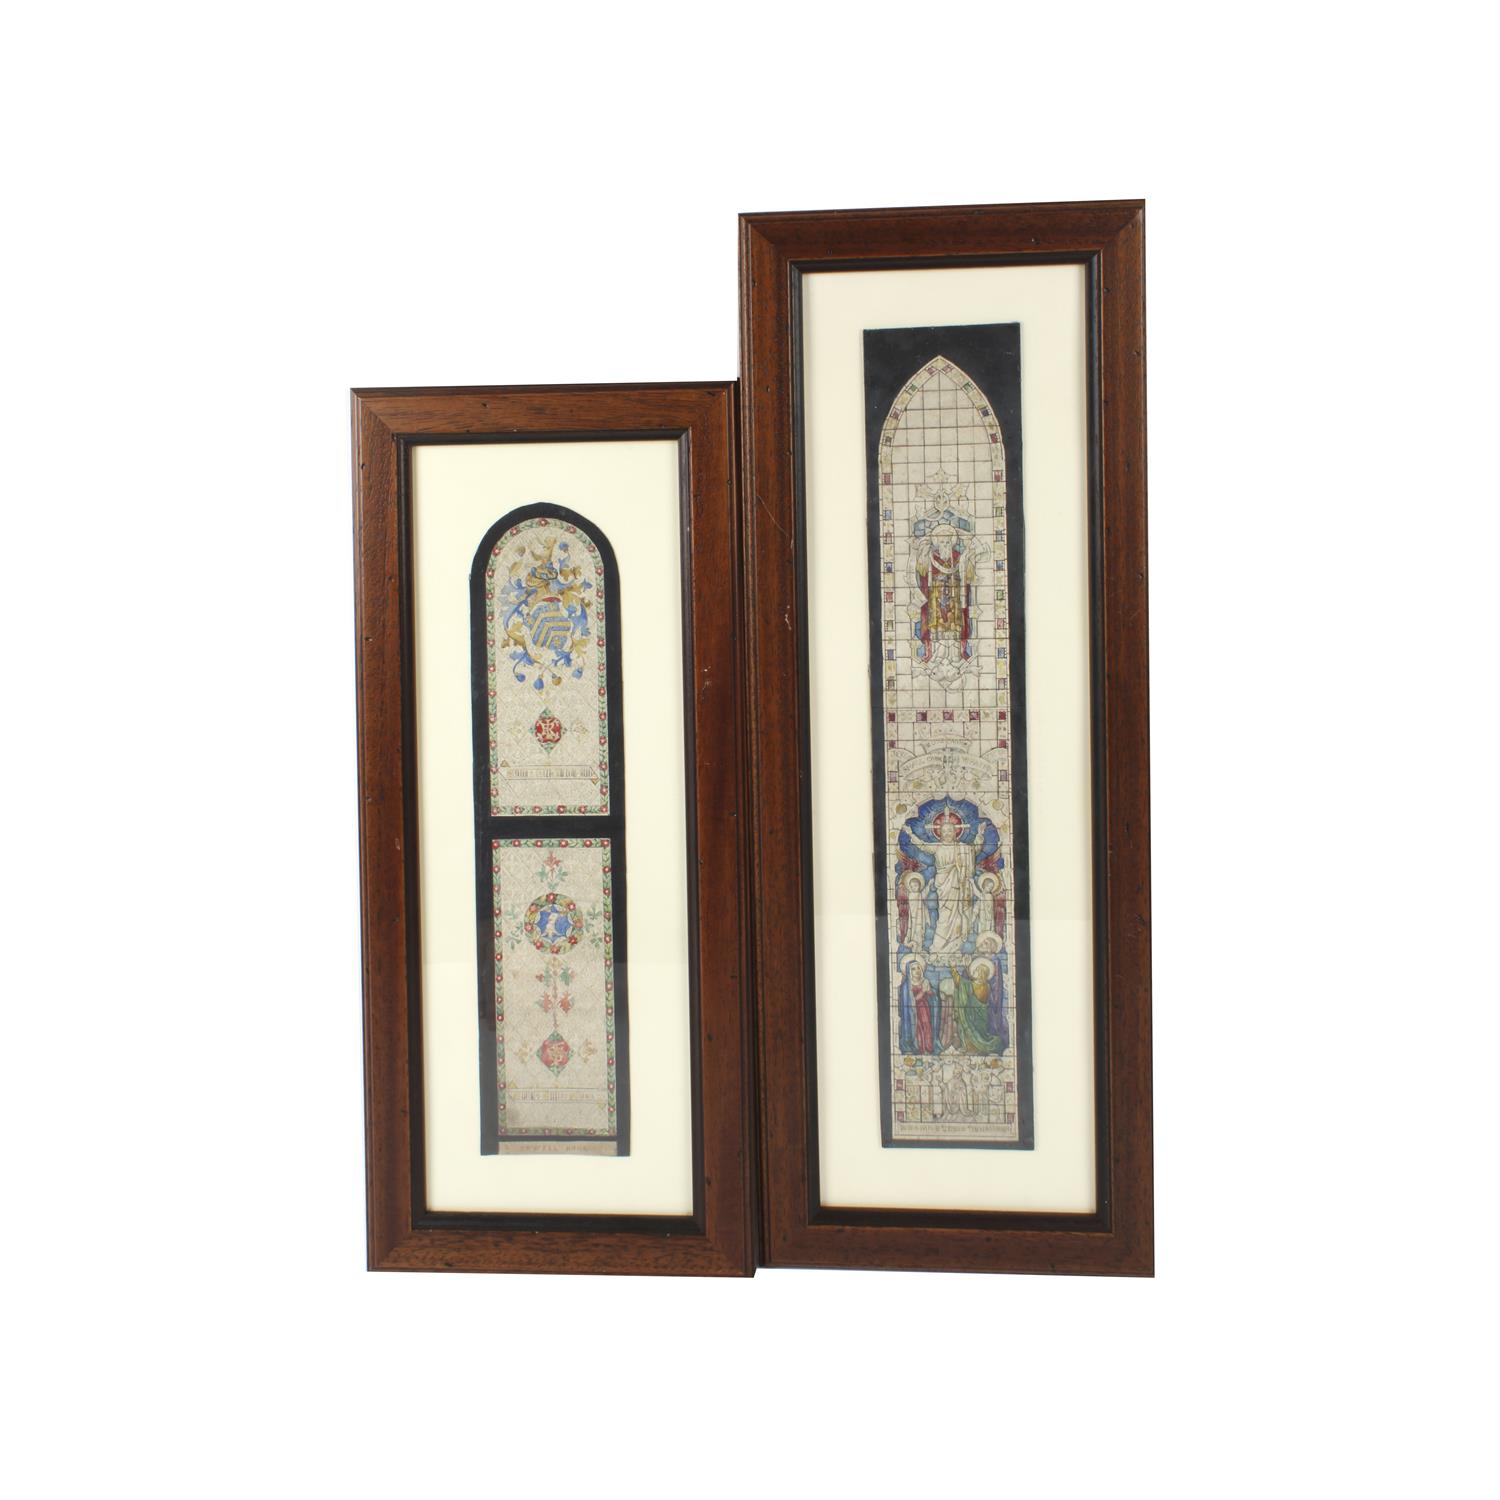 Two framed John Hardman & Co stained glass window designs